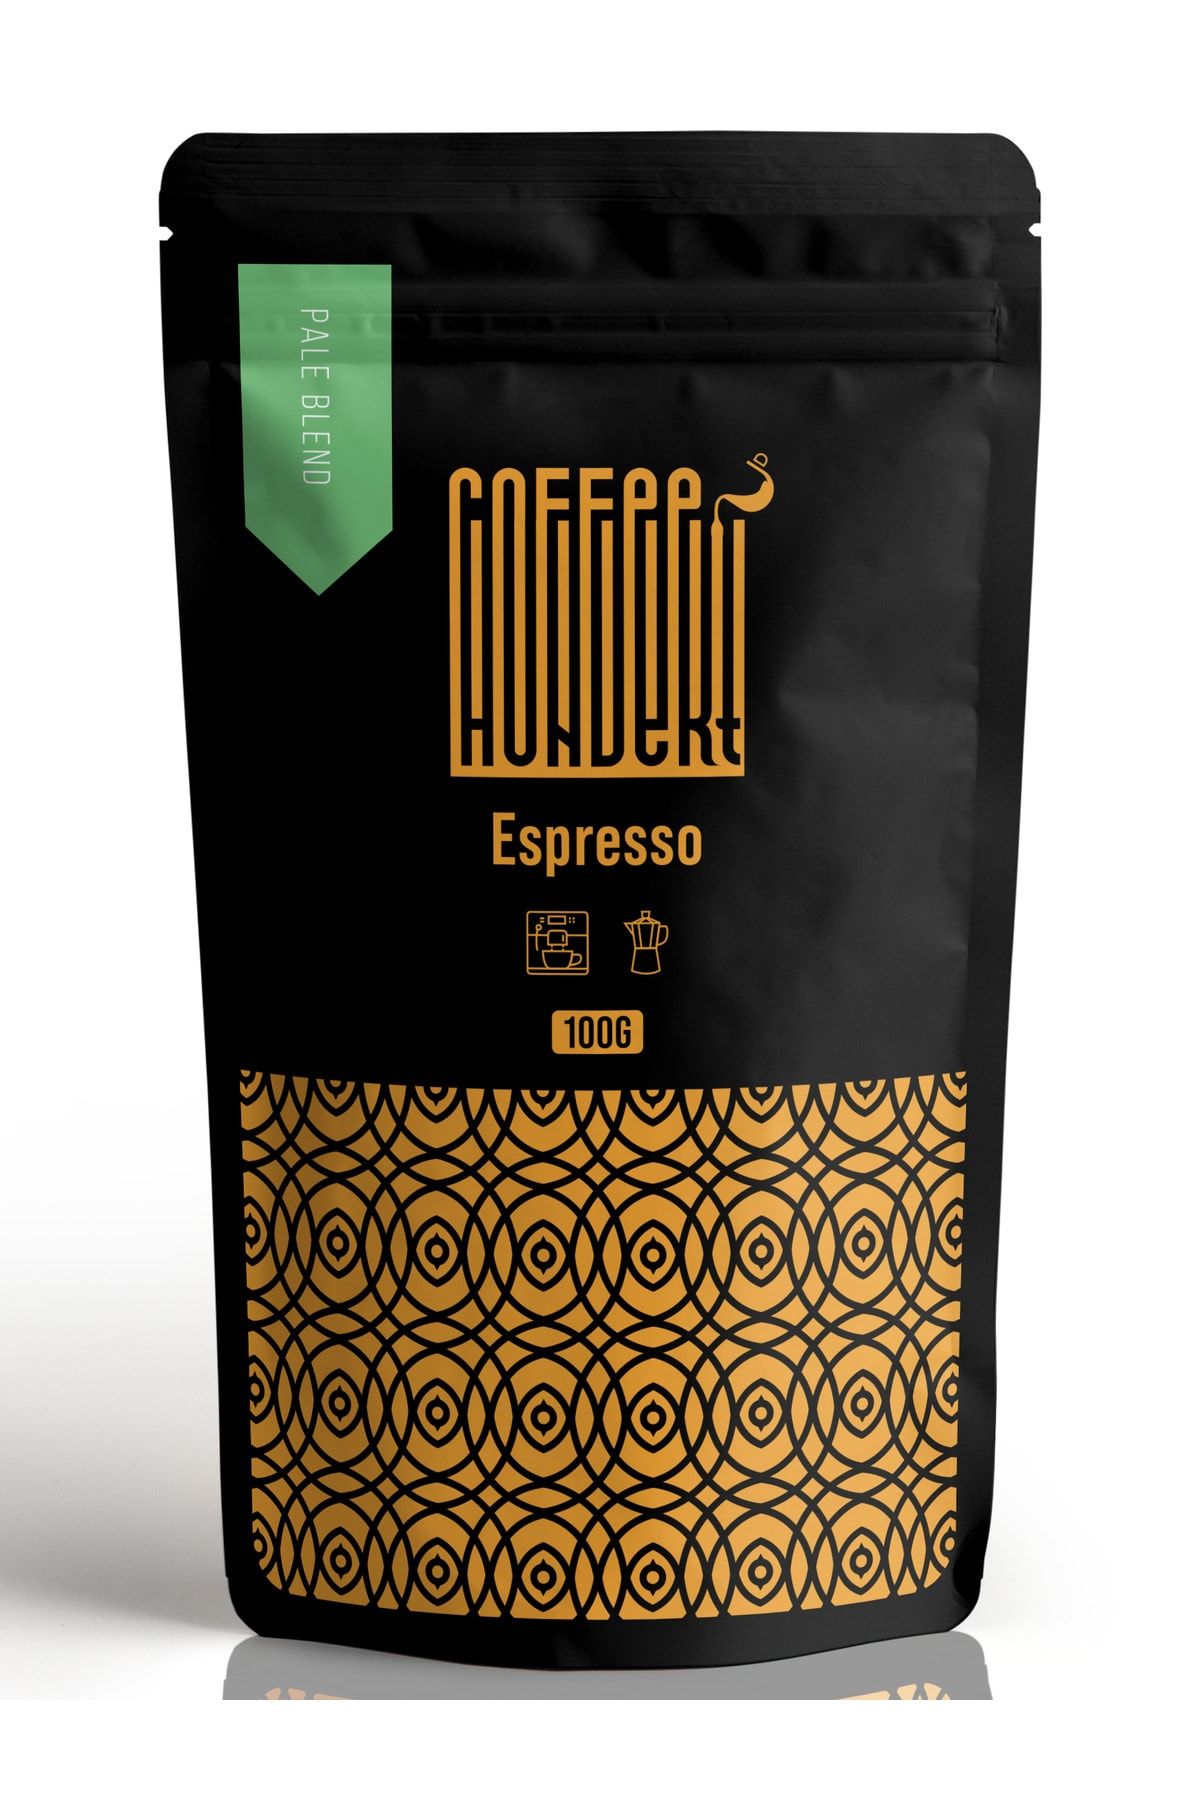 Coffee Hundert Pale Blend Yumuşak Içimli Espresso 100 gram - Espresso Çekirdek Kahve, Espresso Öğütülmüş Kahve